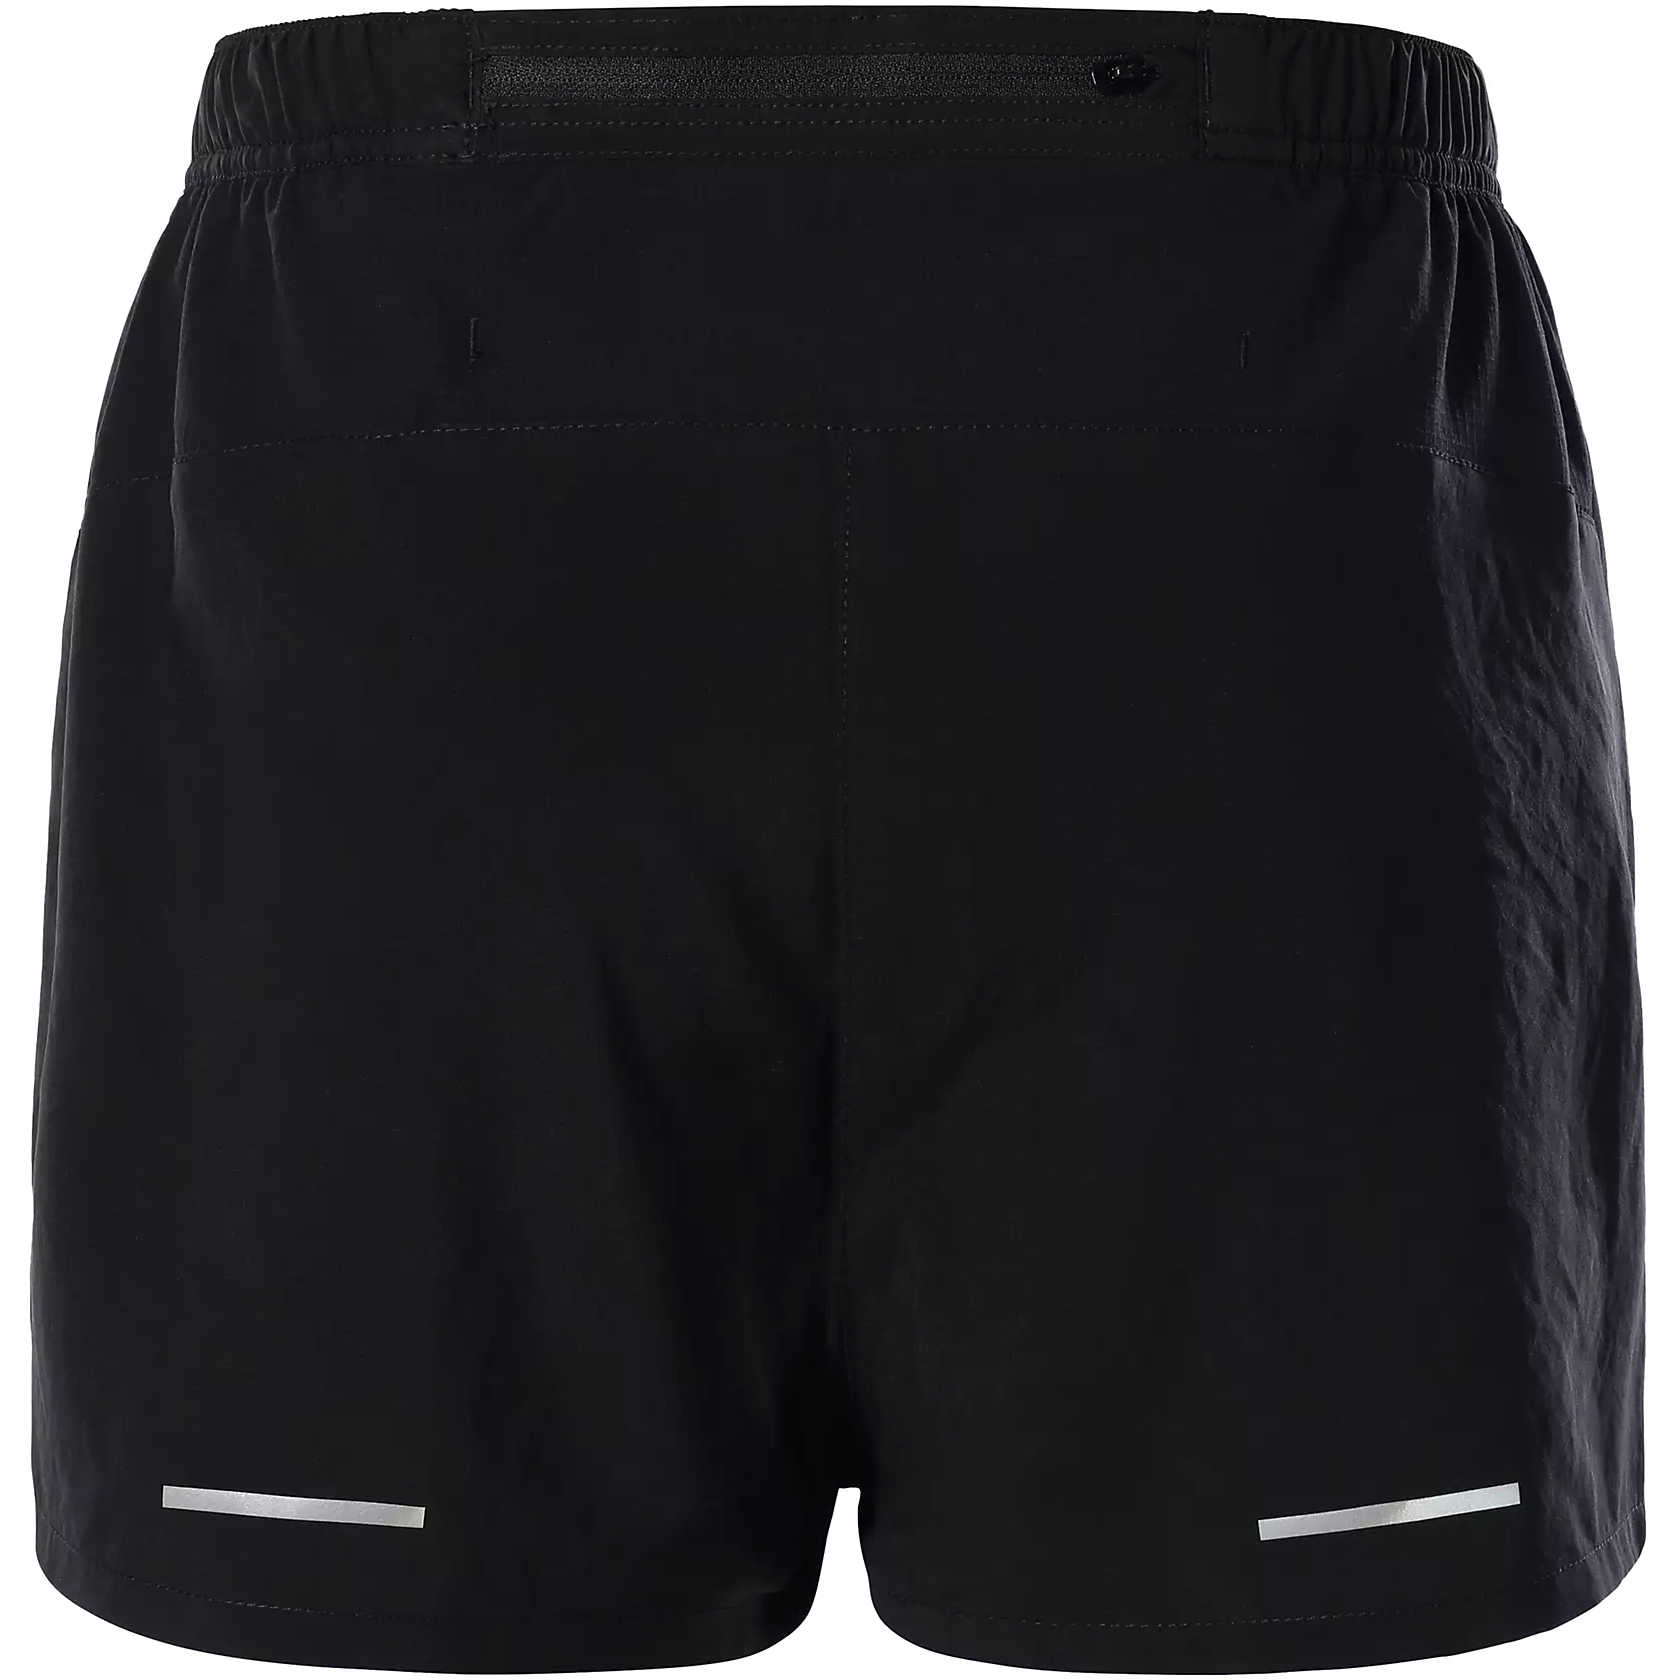 Solid Black Regular Fit Gym Shorts